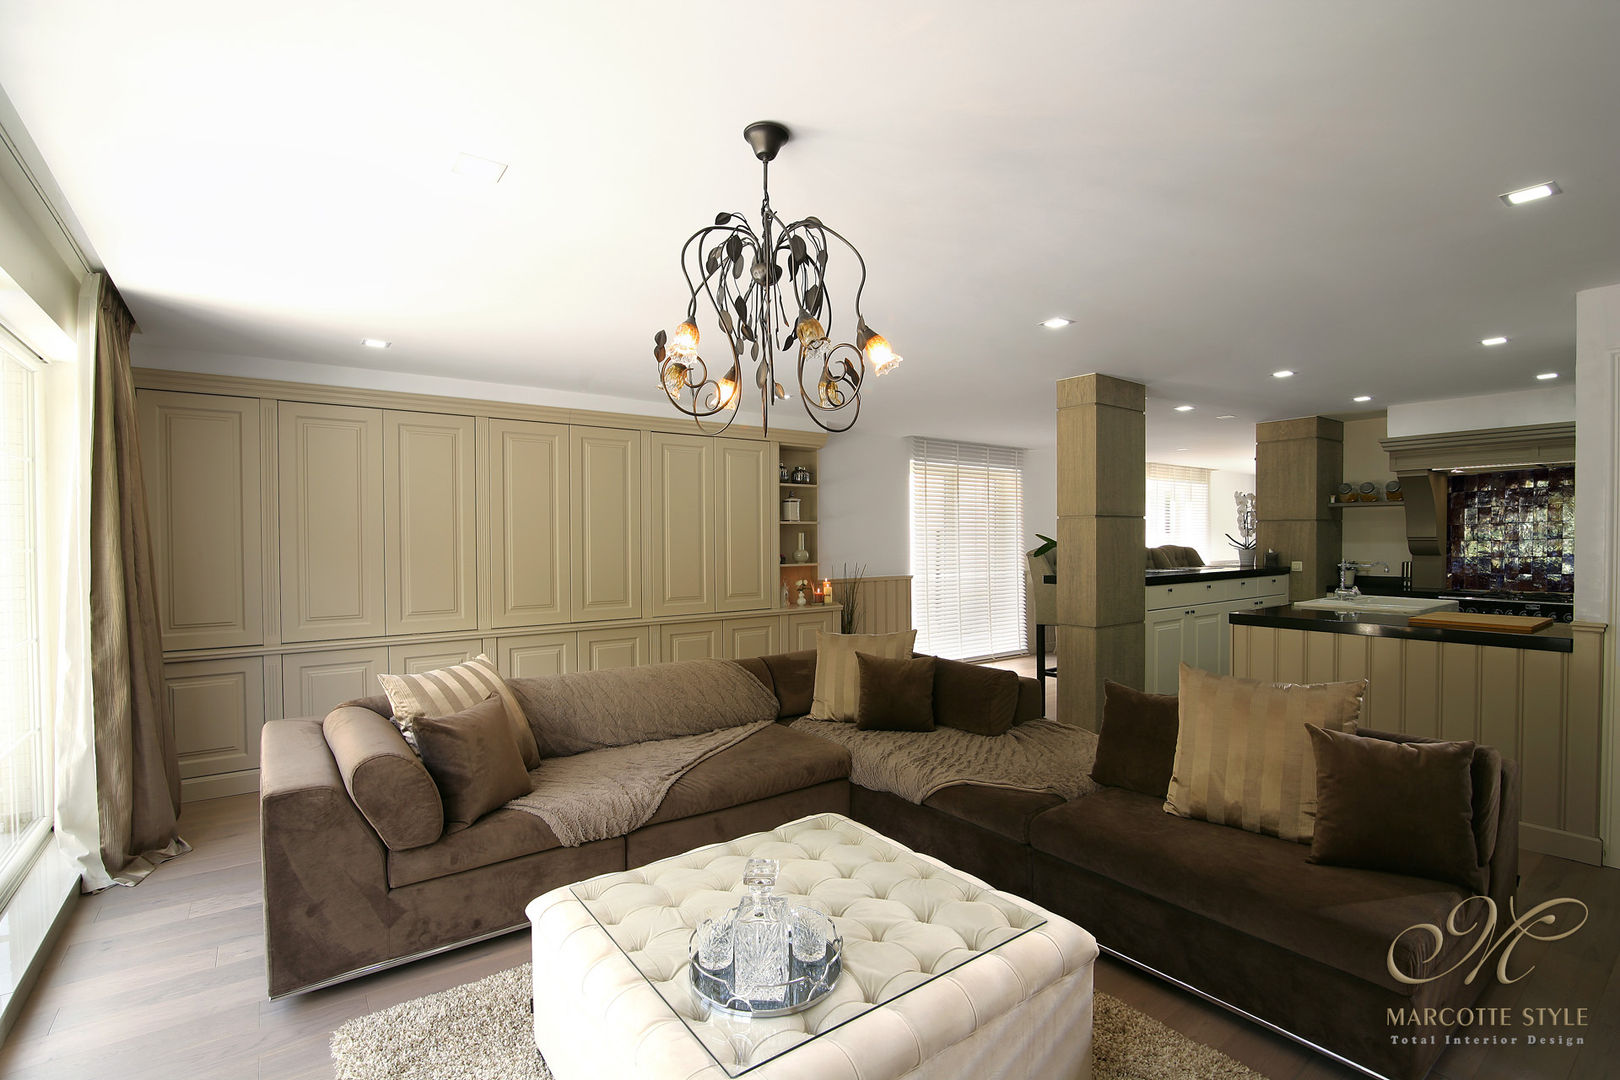 Strakke landelijk interieurinrichting, Marcotte Style Marcotte Style غرفة المعيشة